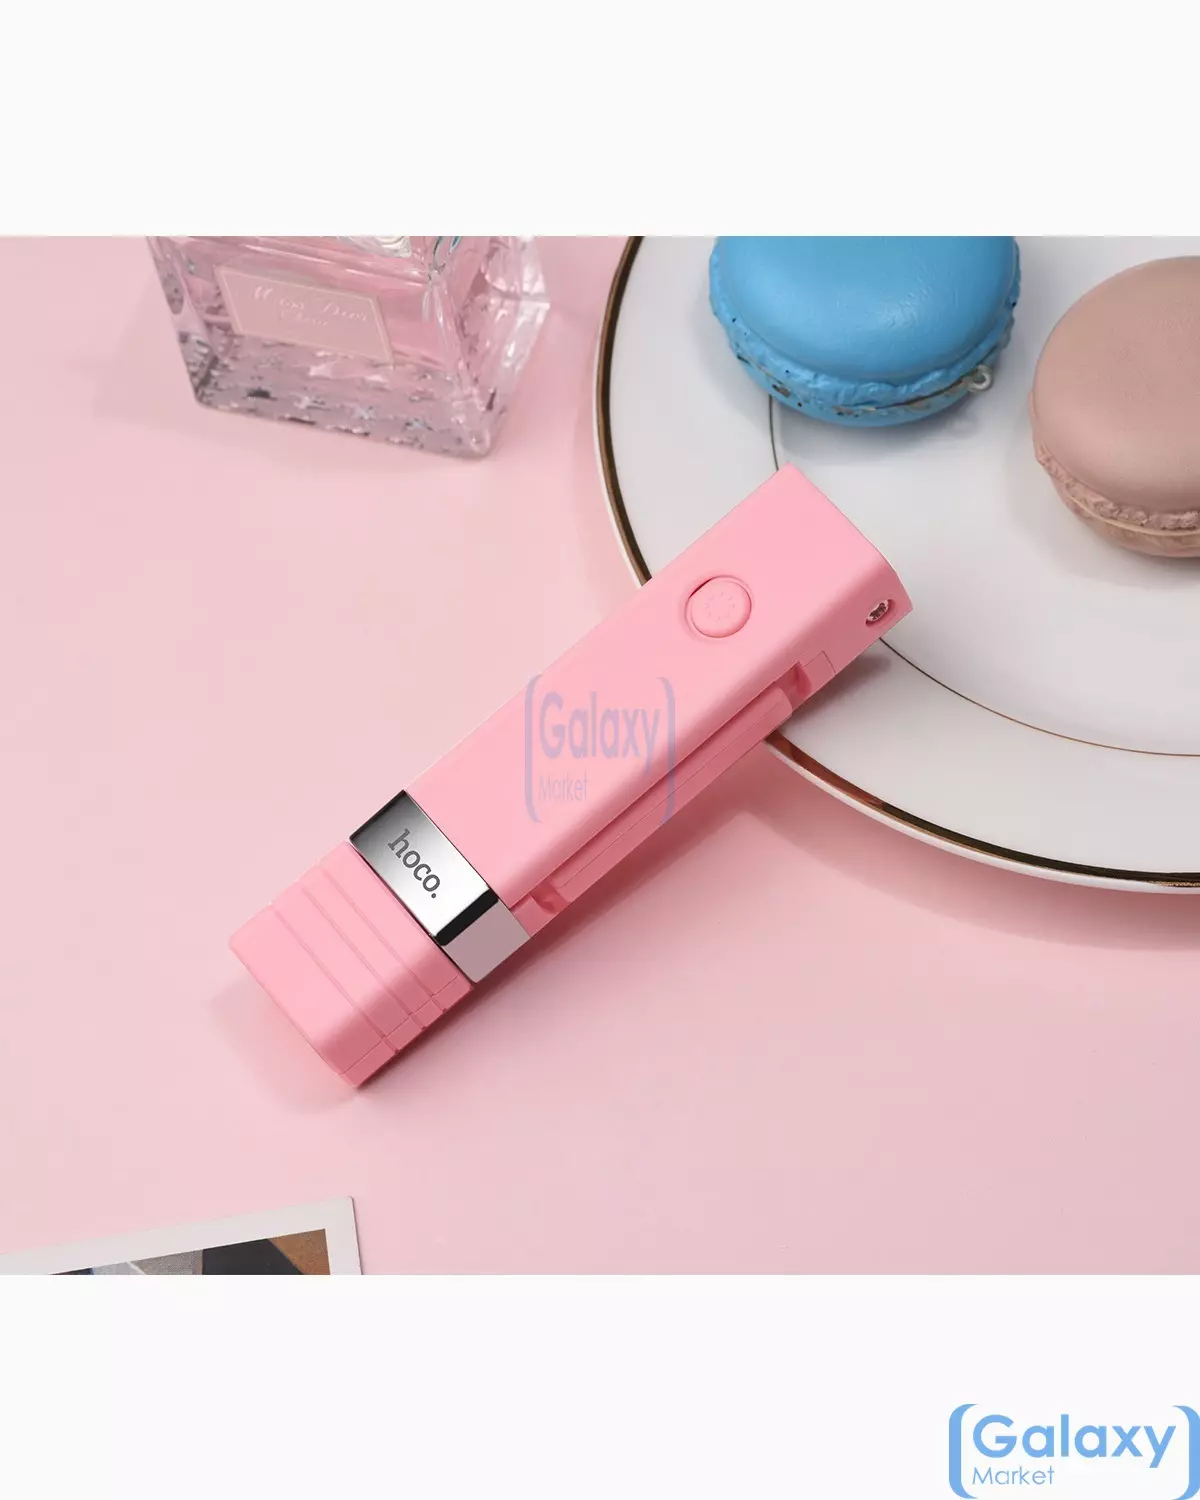  Оригинальная селфи палка Hoco K4 Beauty Wireless Selfie Stick и смартфонов Pink (Розовый)